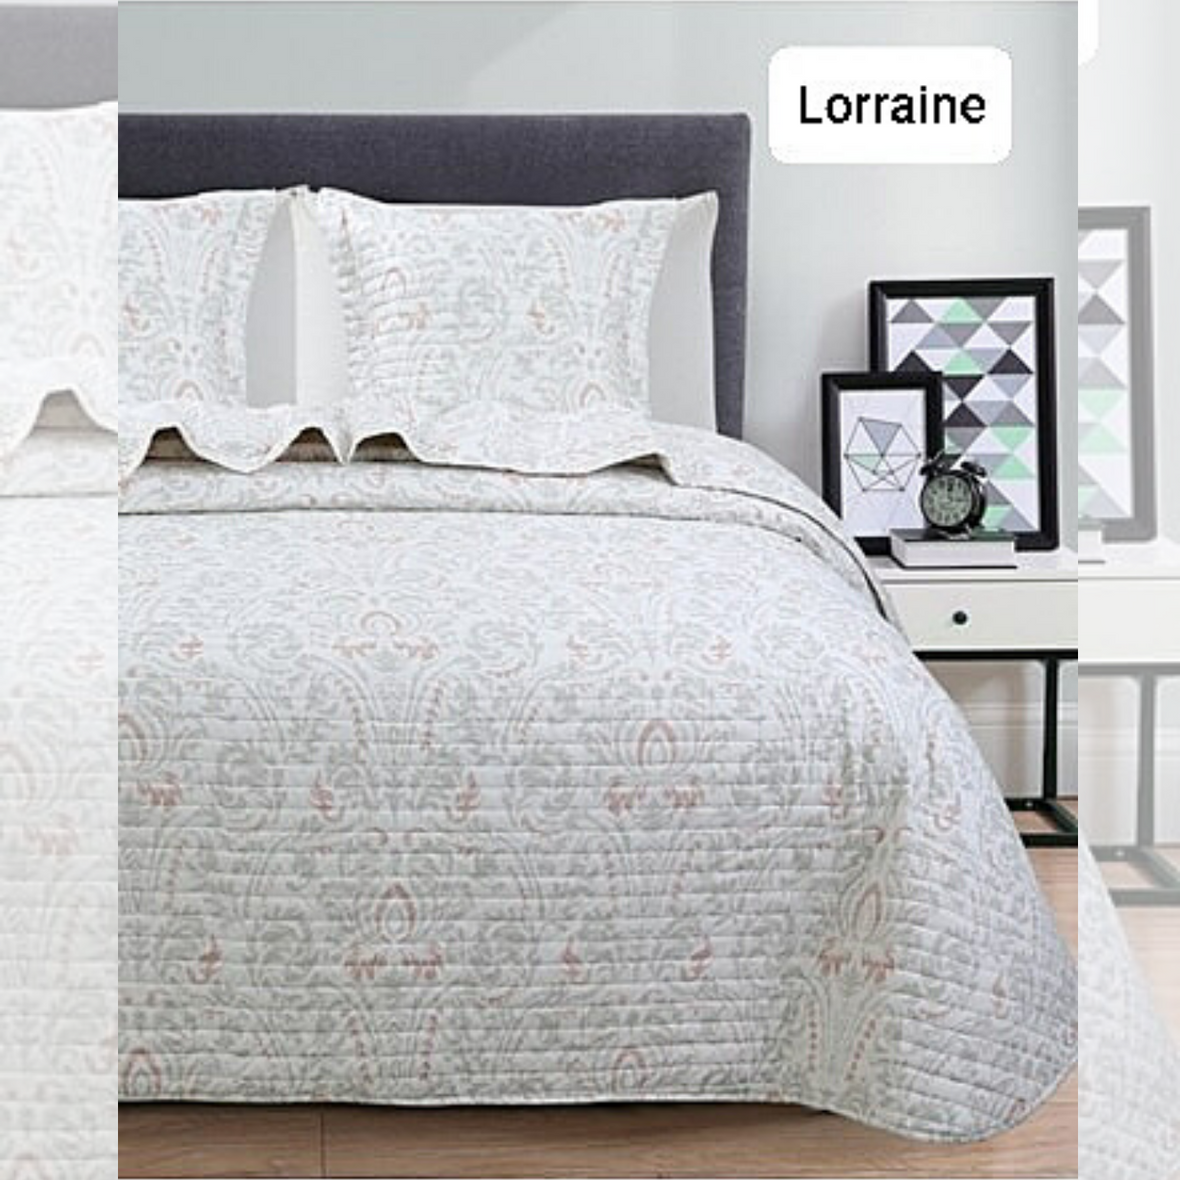 Lorraine Microfibre Bedspread